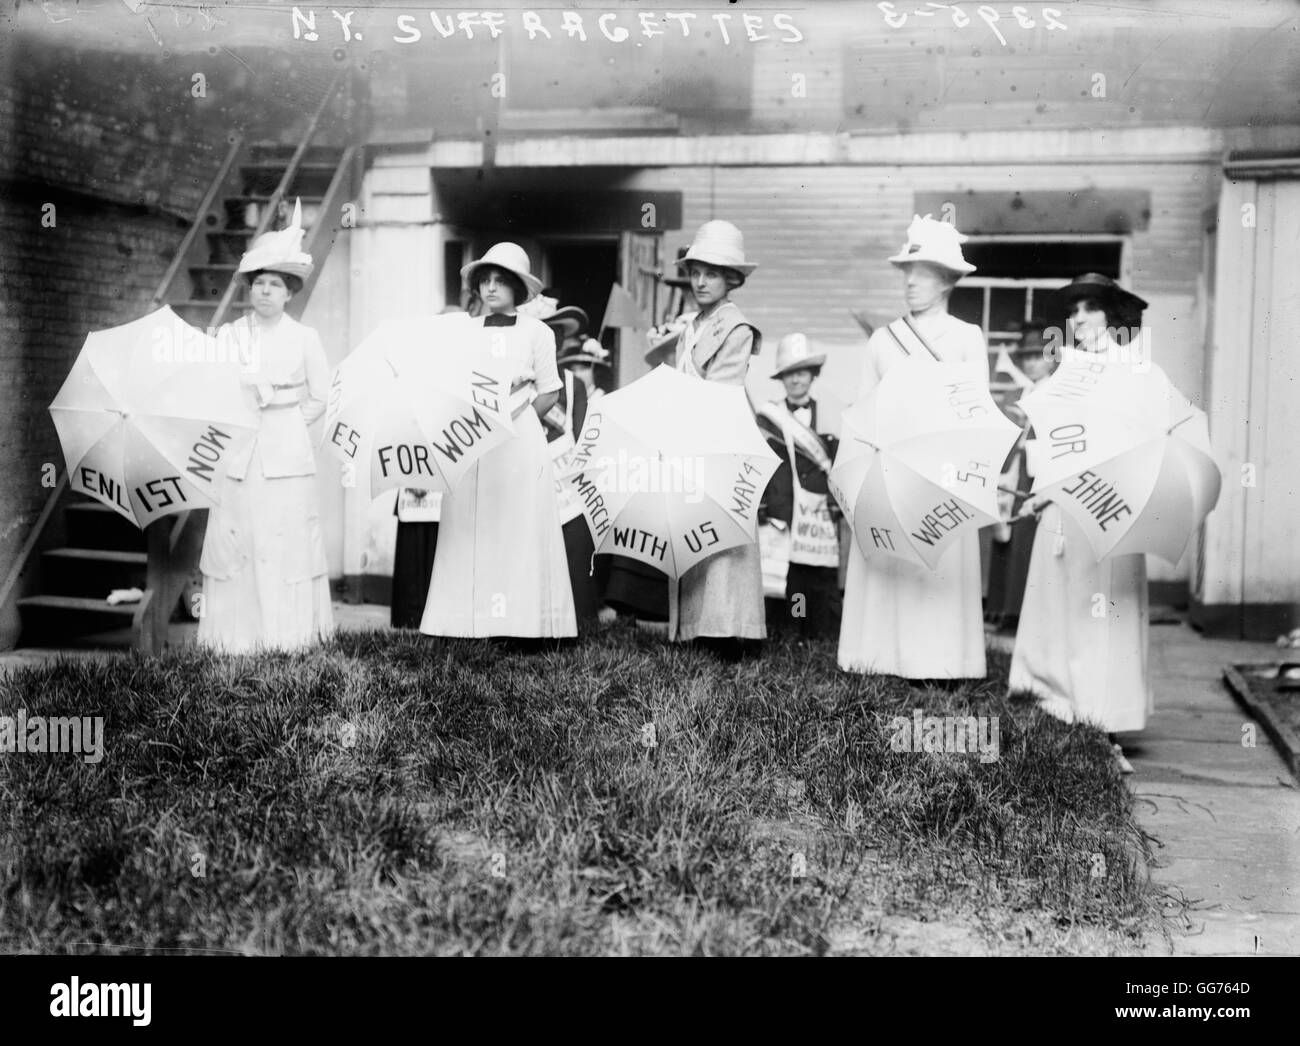 New York Suffragetten lädt Fans an eine Demonstration teilnehmen. Stockfoto